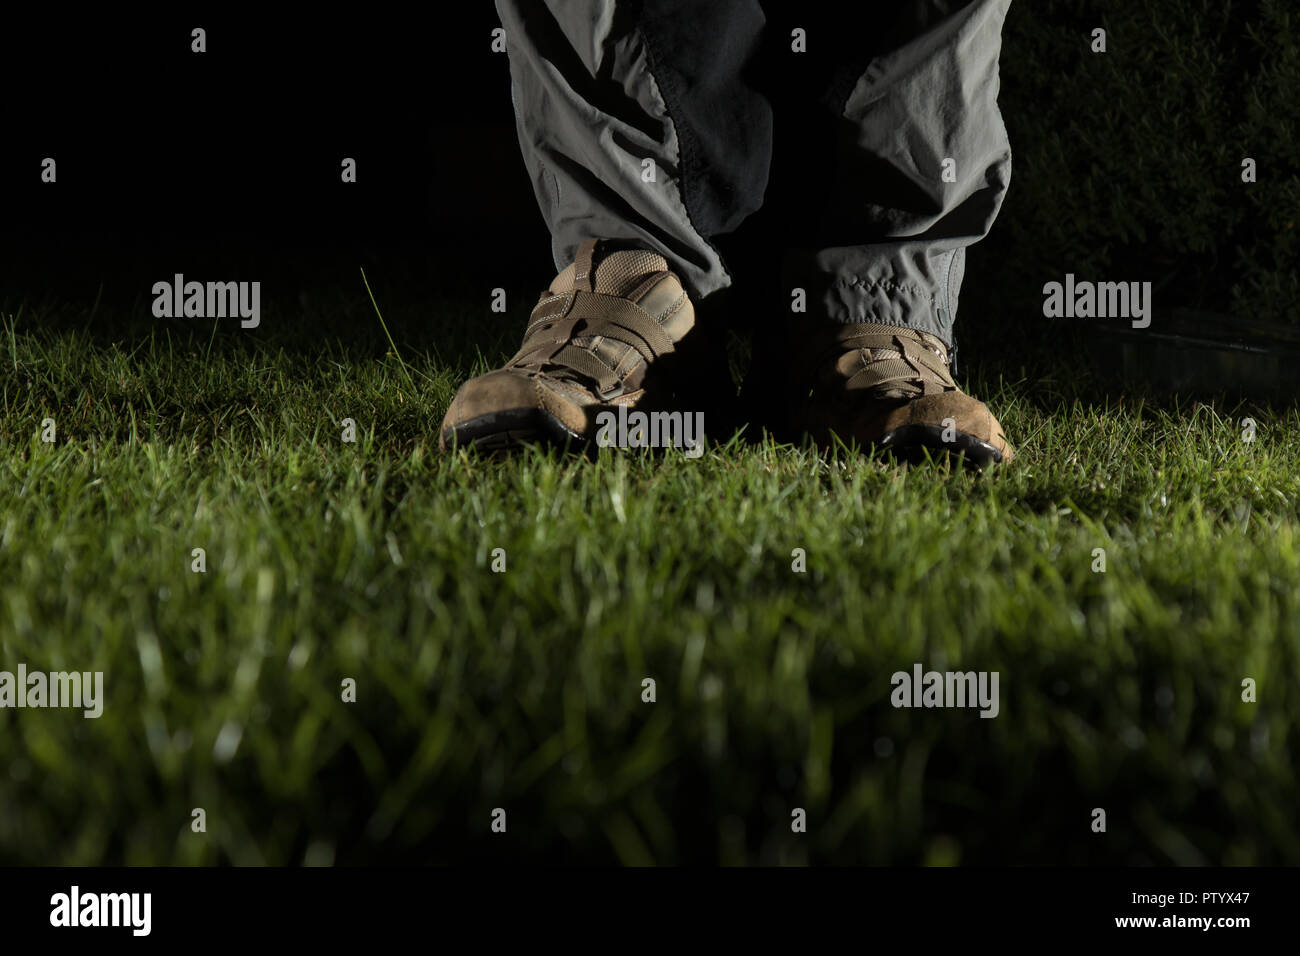 Niedrigen Winkel, Night Shot des Mannes Fuß in der Ausbilder, beleuchtet, stehend auf Gras im Garten. Der froschperspektive der männlichen Schuhe & Unterschenkel Hose in Dunkel. Stockfoto